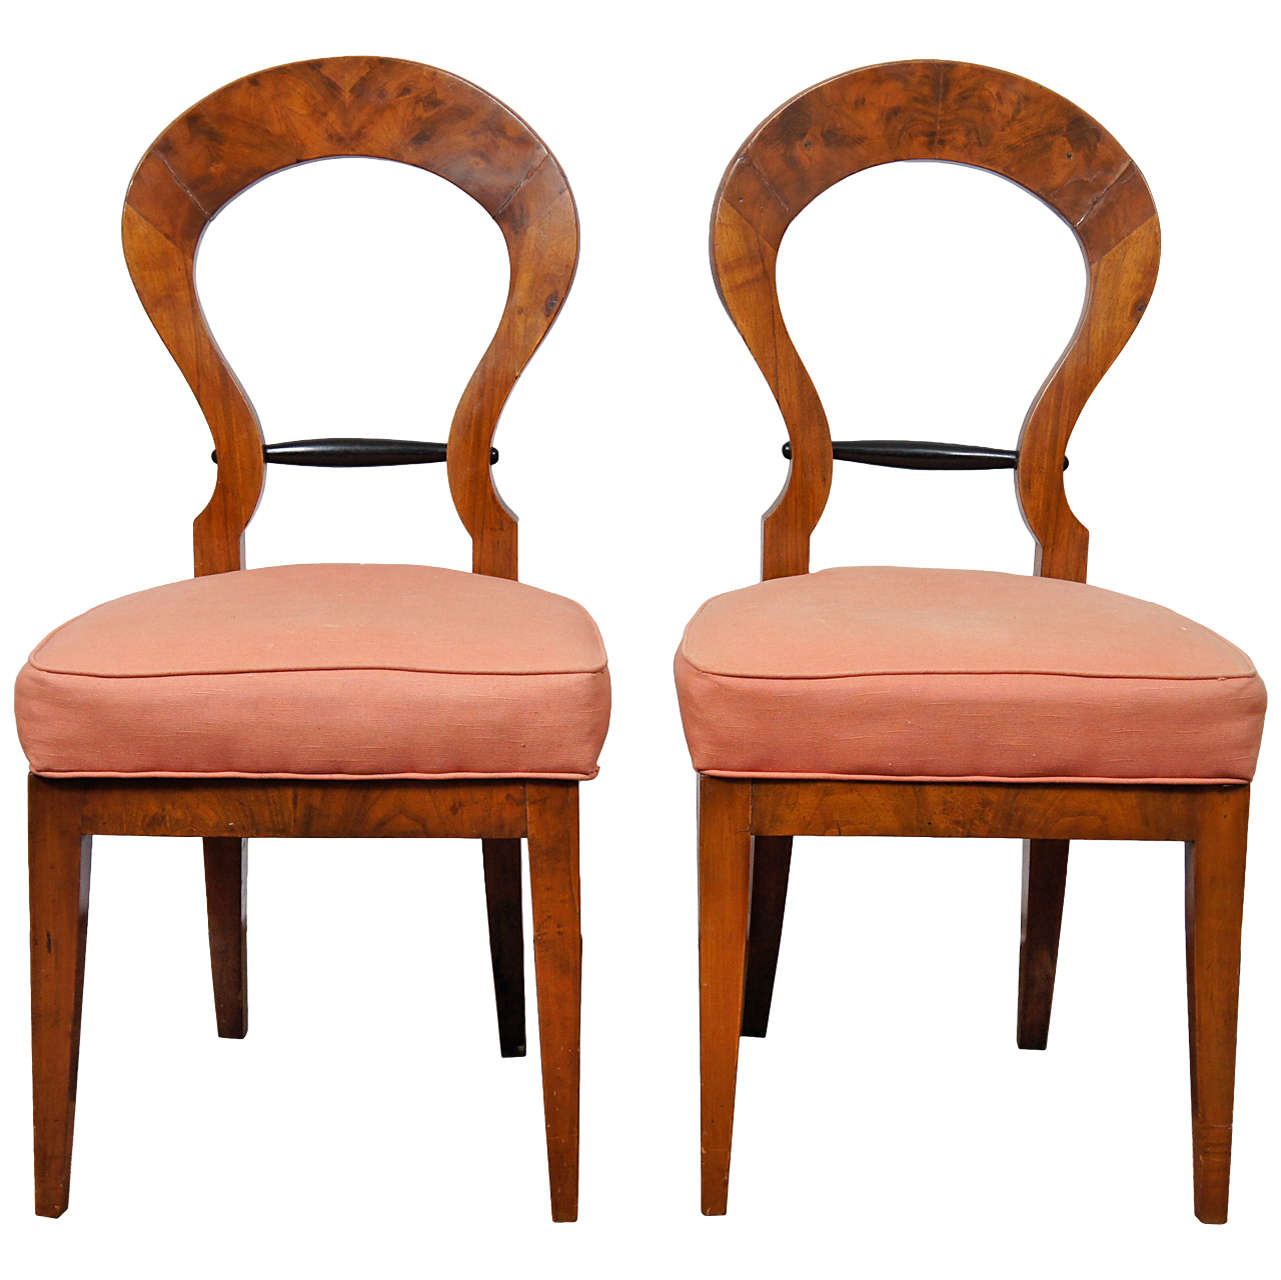 Pair of Italian Biedermeier Style Side Chairs